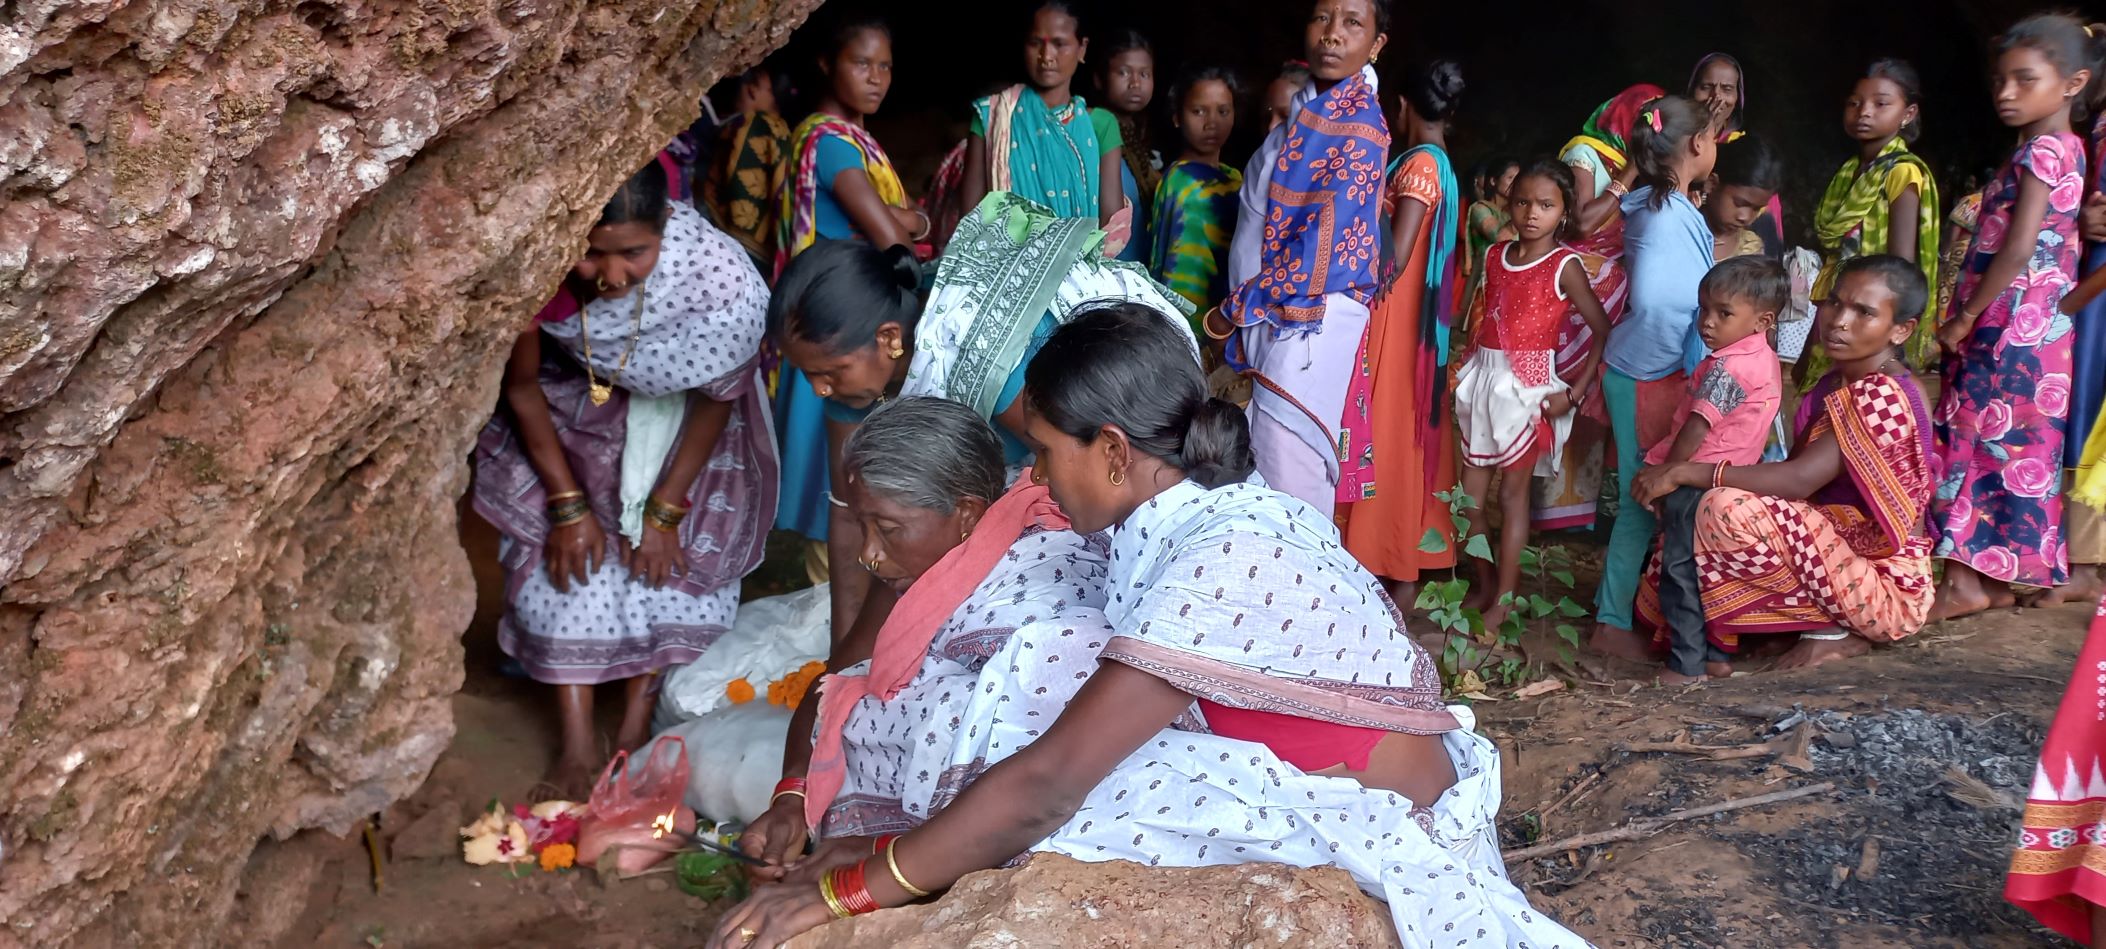 माली पहाड़ पर पाकुली देवी की पूजा करती आदिवासी स्त्रियां.